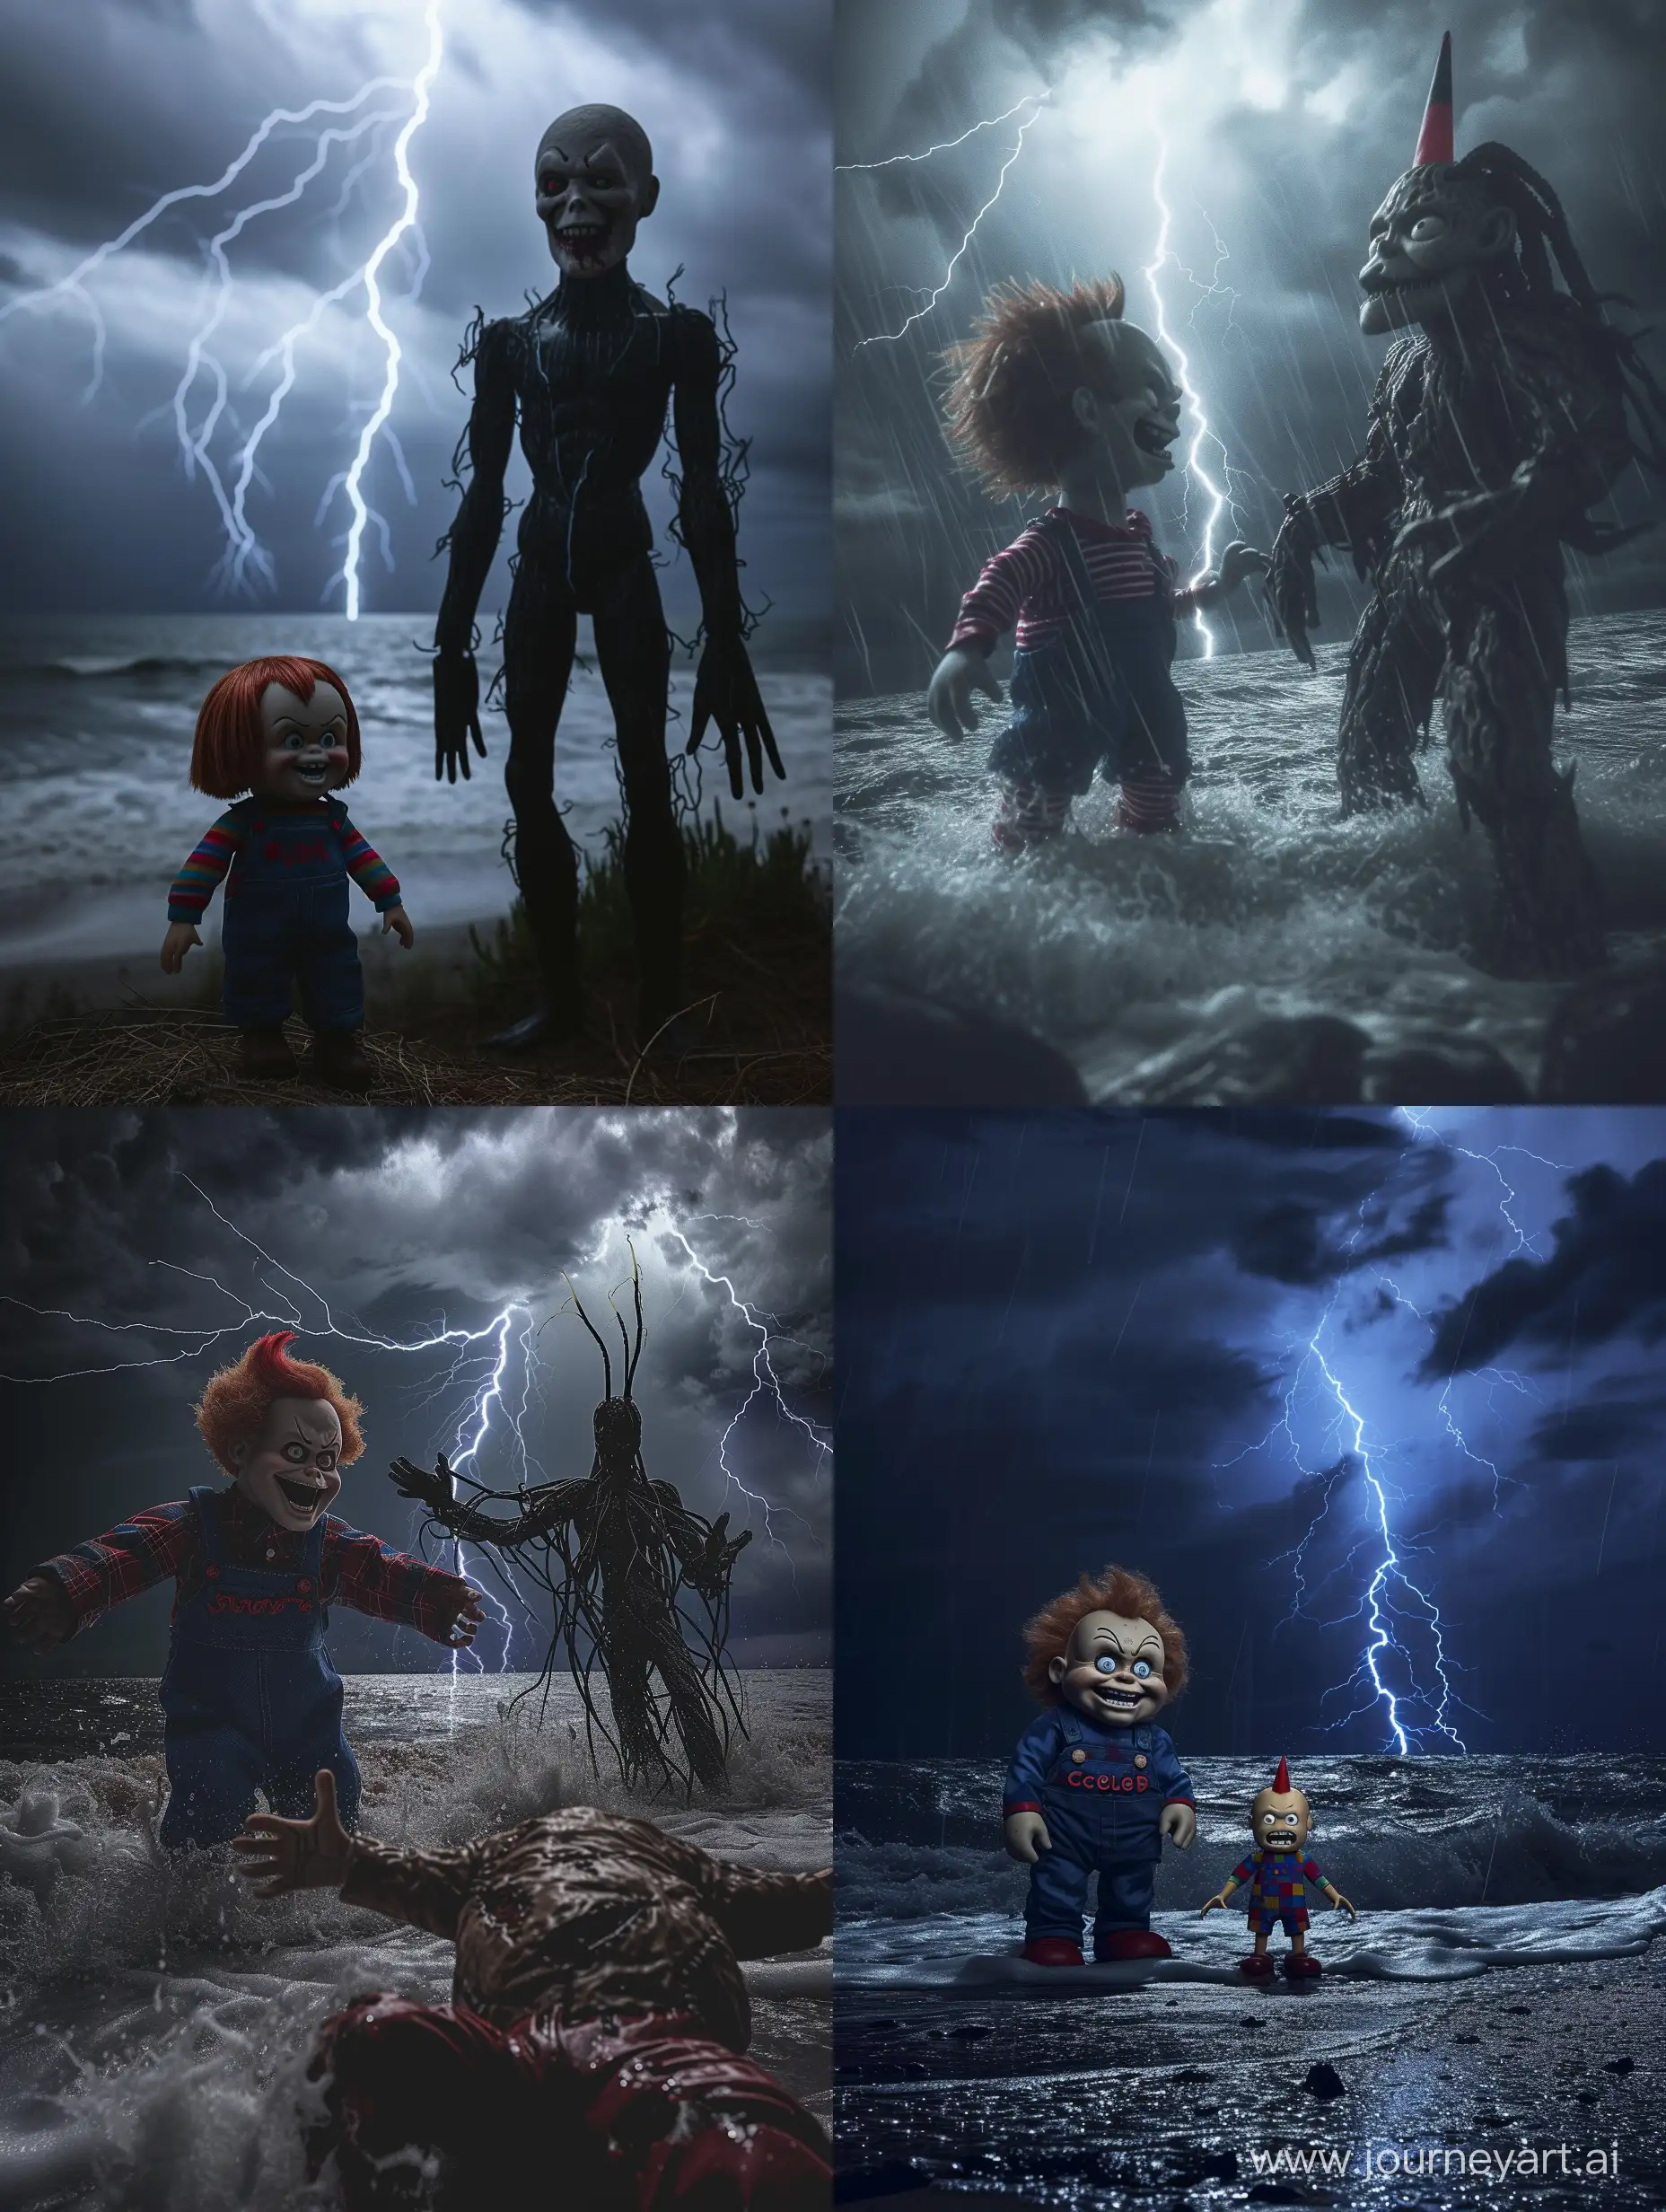 Epic-Showdown-Massive-Chucky-vs-Towering-Slenderman-in-LightningStruck-Seascape